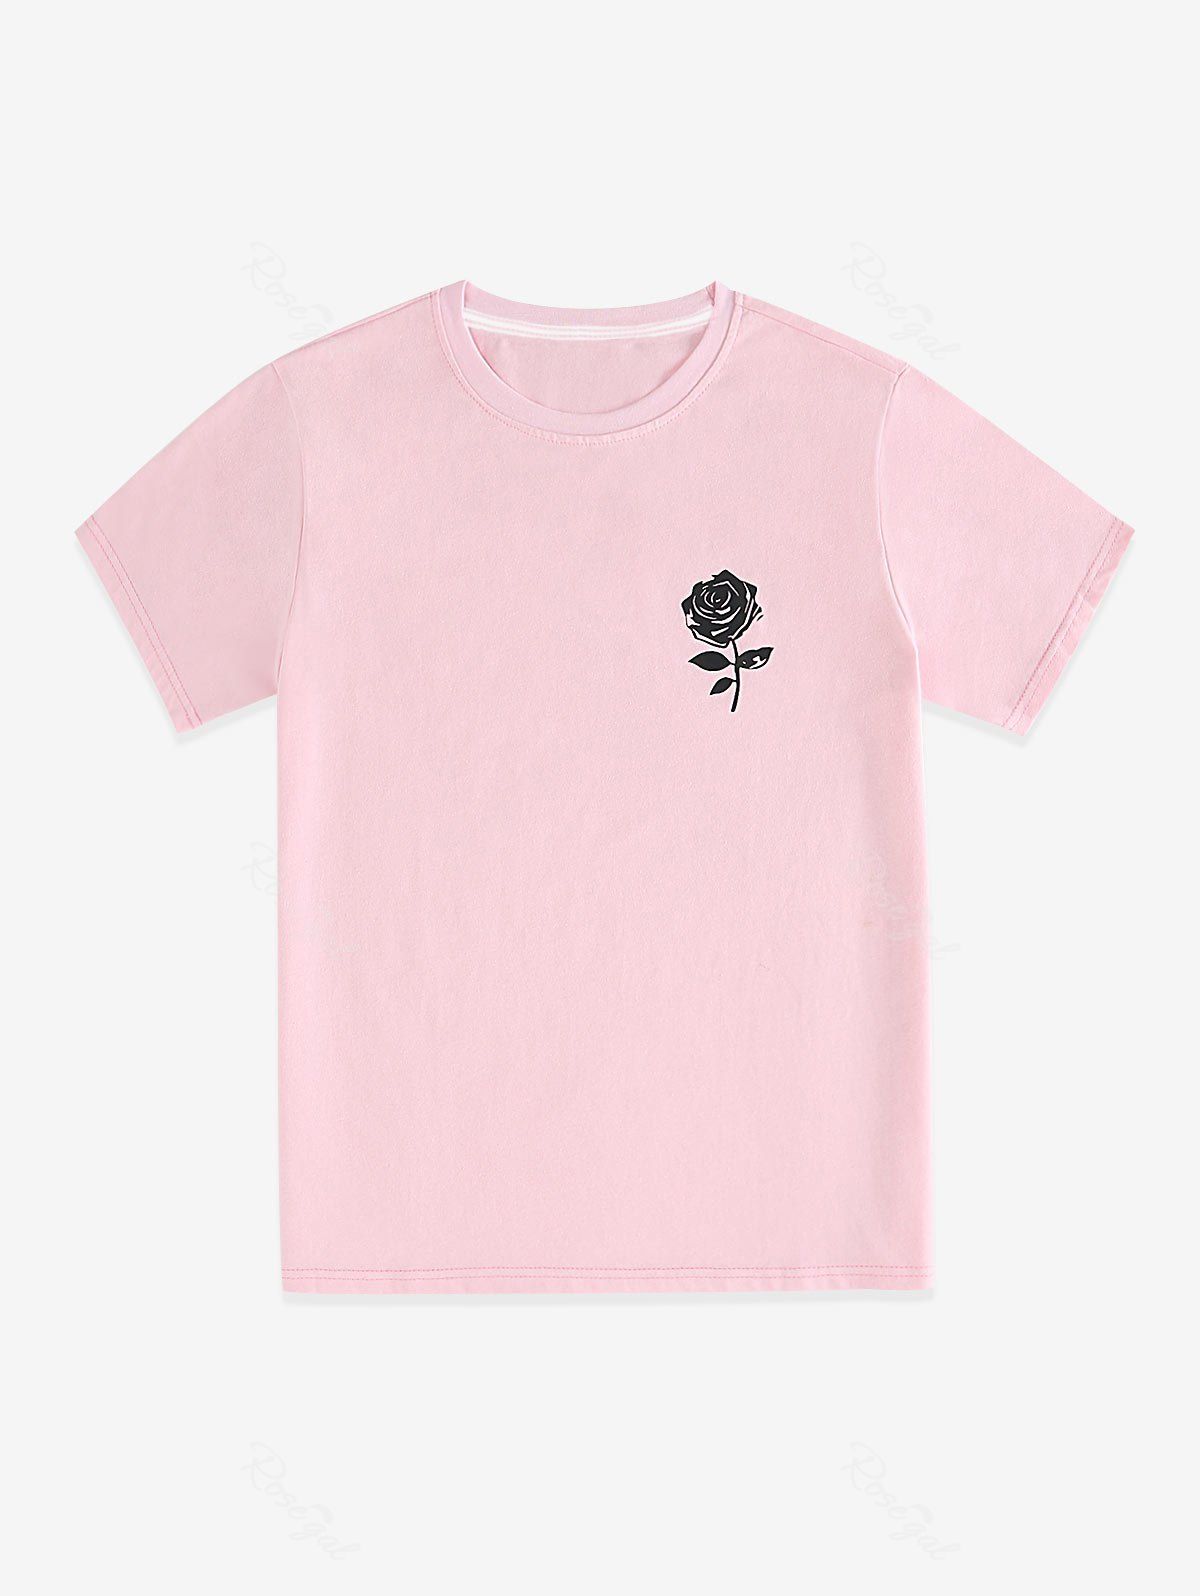 T-Shirt de Base Unisexe à Imprimé Rose de Grande Taille Rose clair L